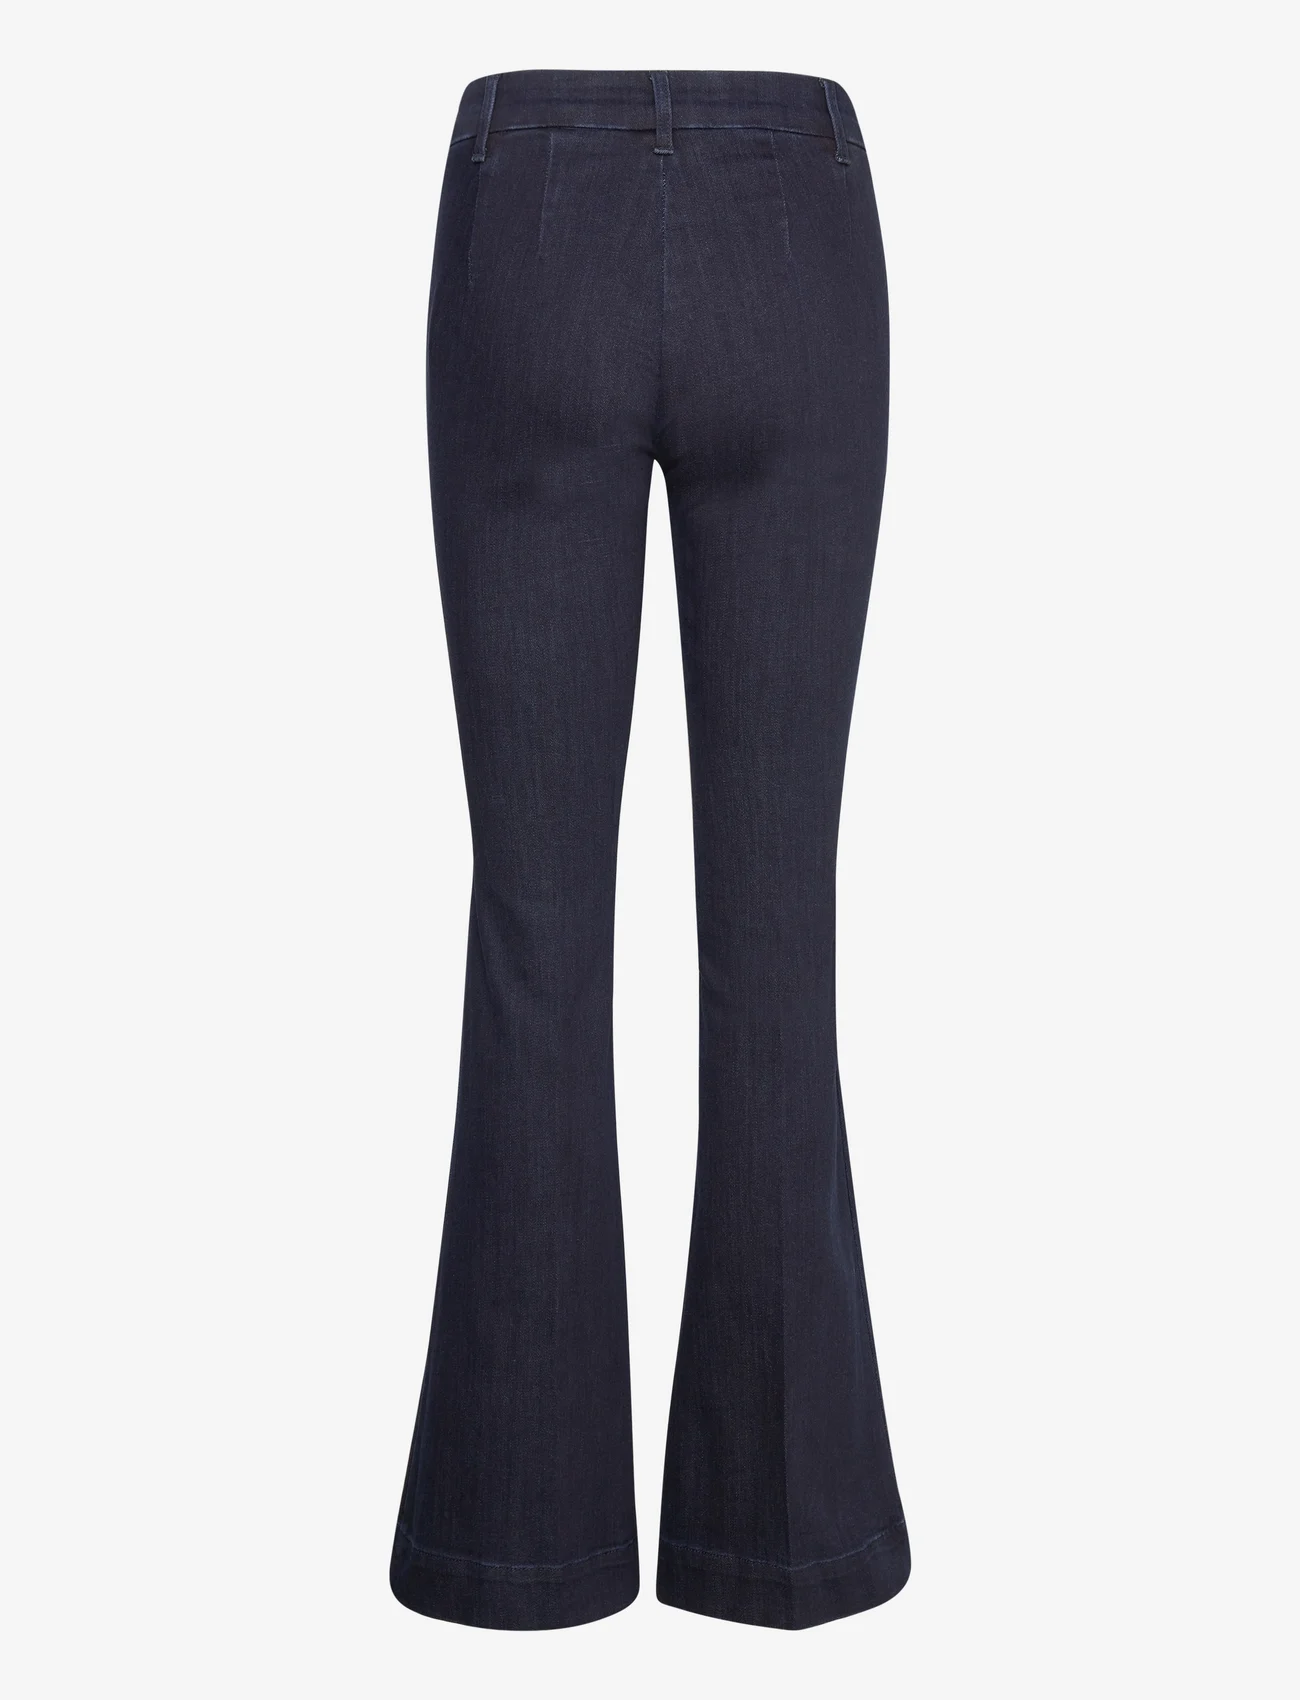 My Essential Wardrobe - AyoMW 158 High Bootcut Y - flared jeans - dark blue un-wash - 1